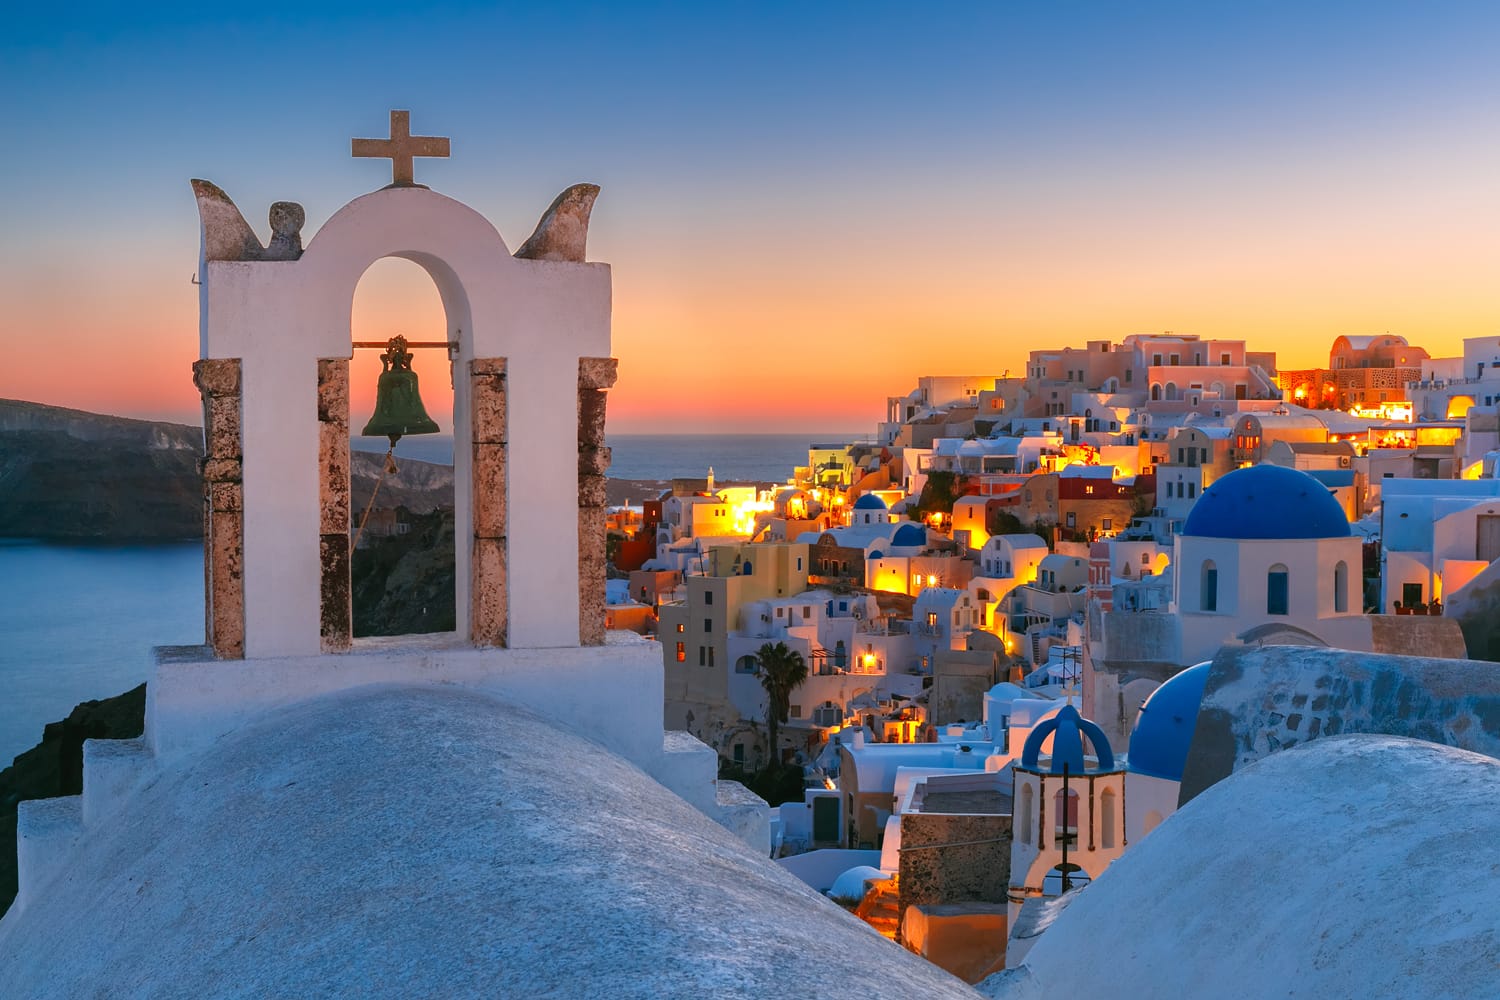 Lengkungan dengan lonceng, rumah putih dan gereja dengan kubah biru di Oia atau Ia saat matahari terbenam keemasan, pulau Santorini, Yunani.